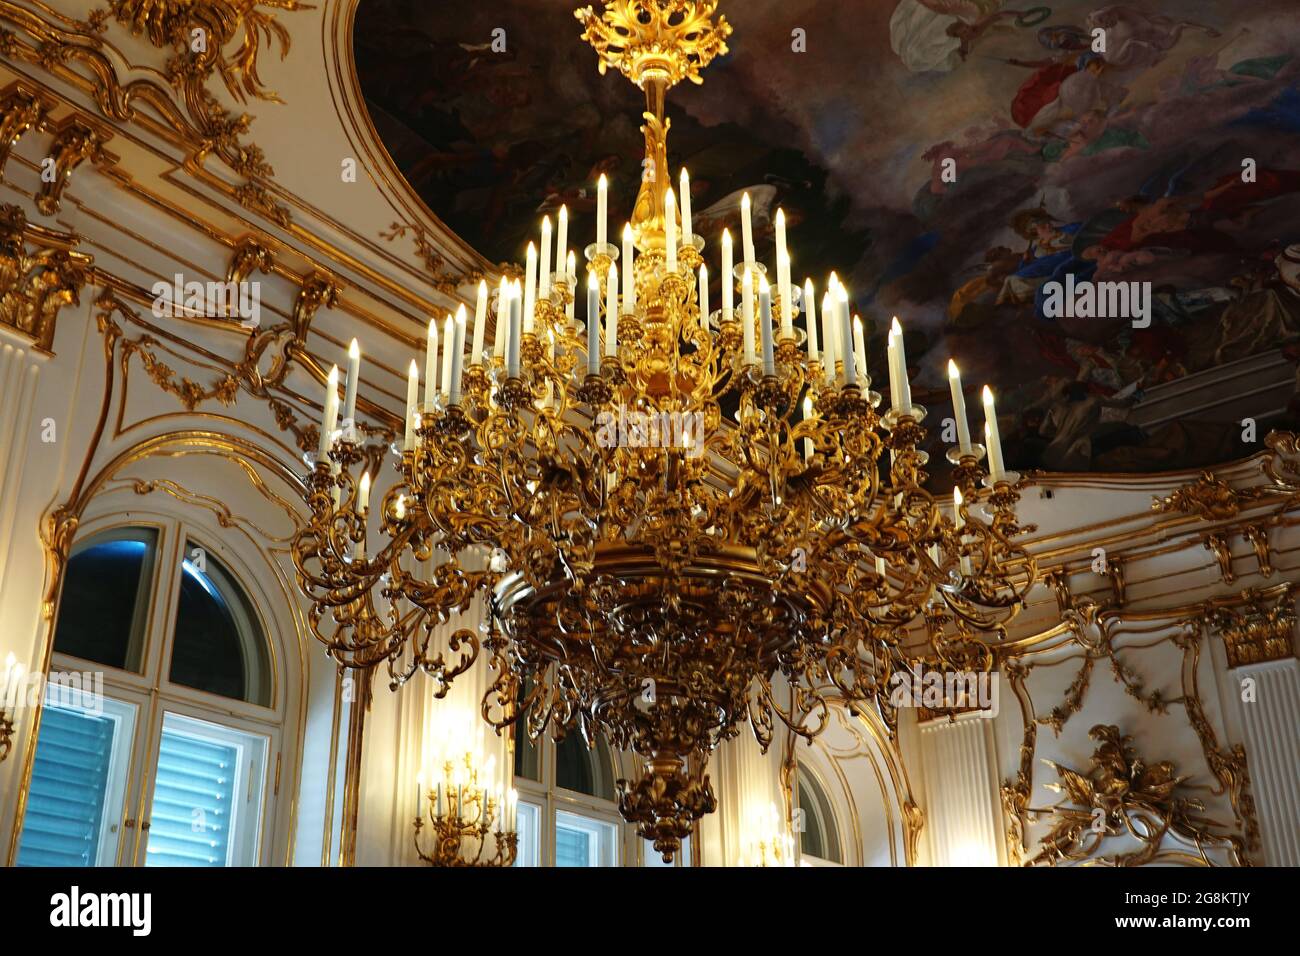 Wien, Österreich, Wandeln durch das kaiserliche Schloss Schönbrunn in hell erleuchteten Prunkräumen von Kaiser Franz Josef und Kaiserin Sissi Stock Photo